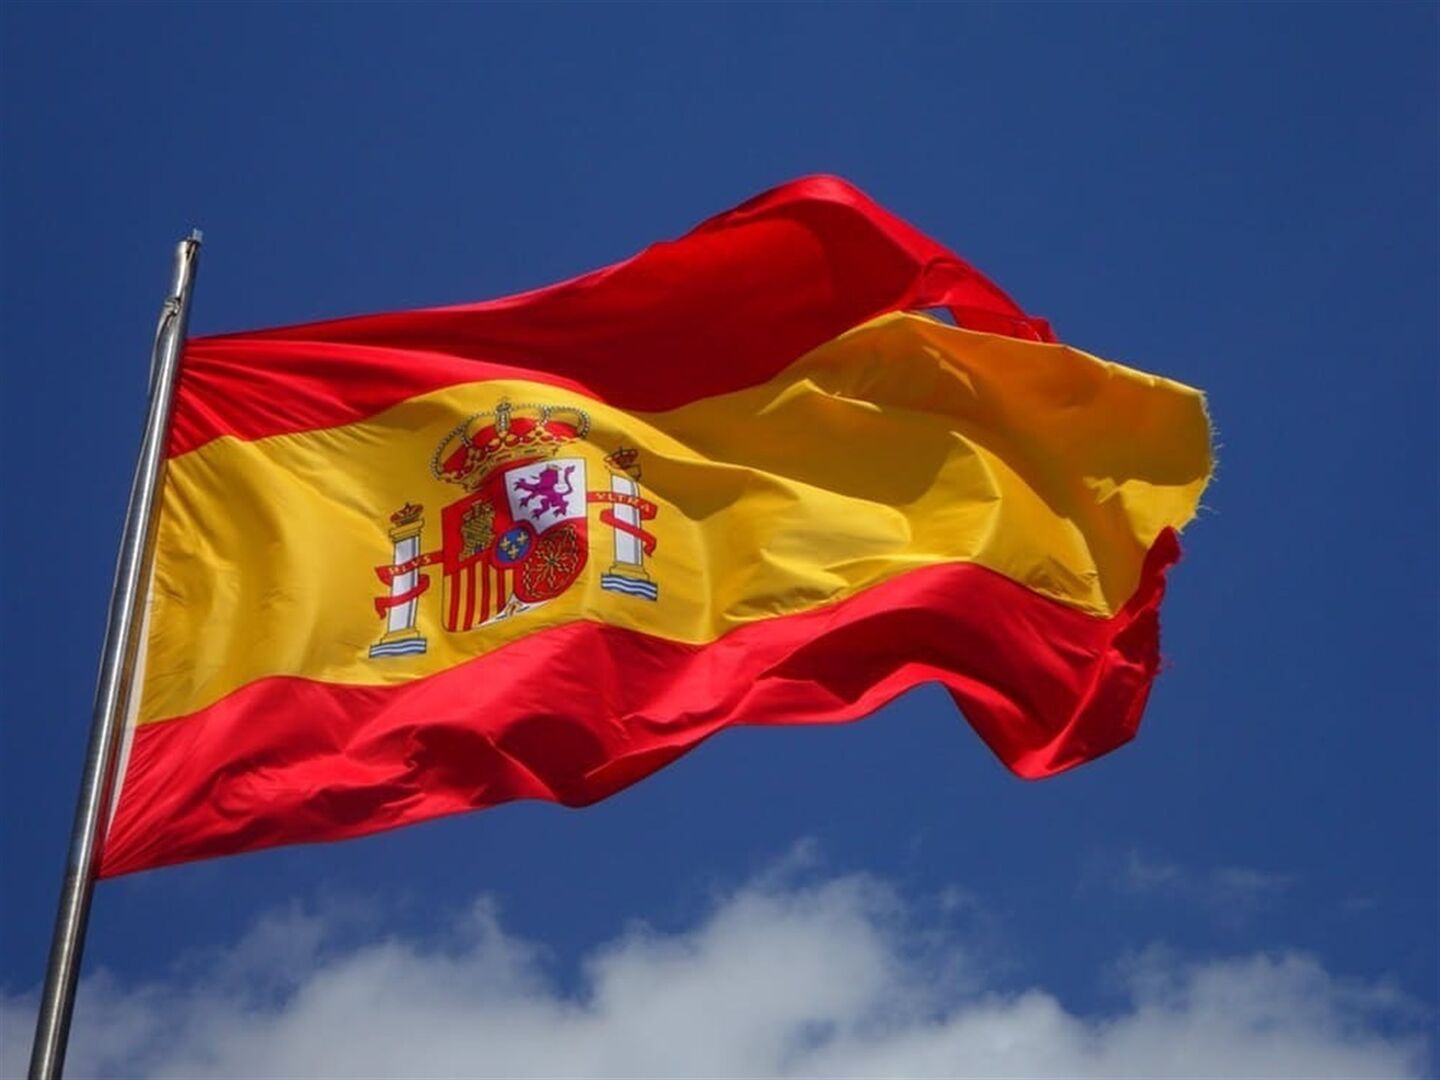 Lo llaman democracia, y sí lo es": España es uno de los países más libres y democráticos del mundo - Libre Mercado